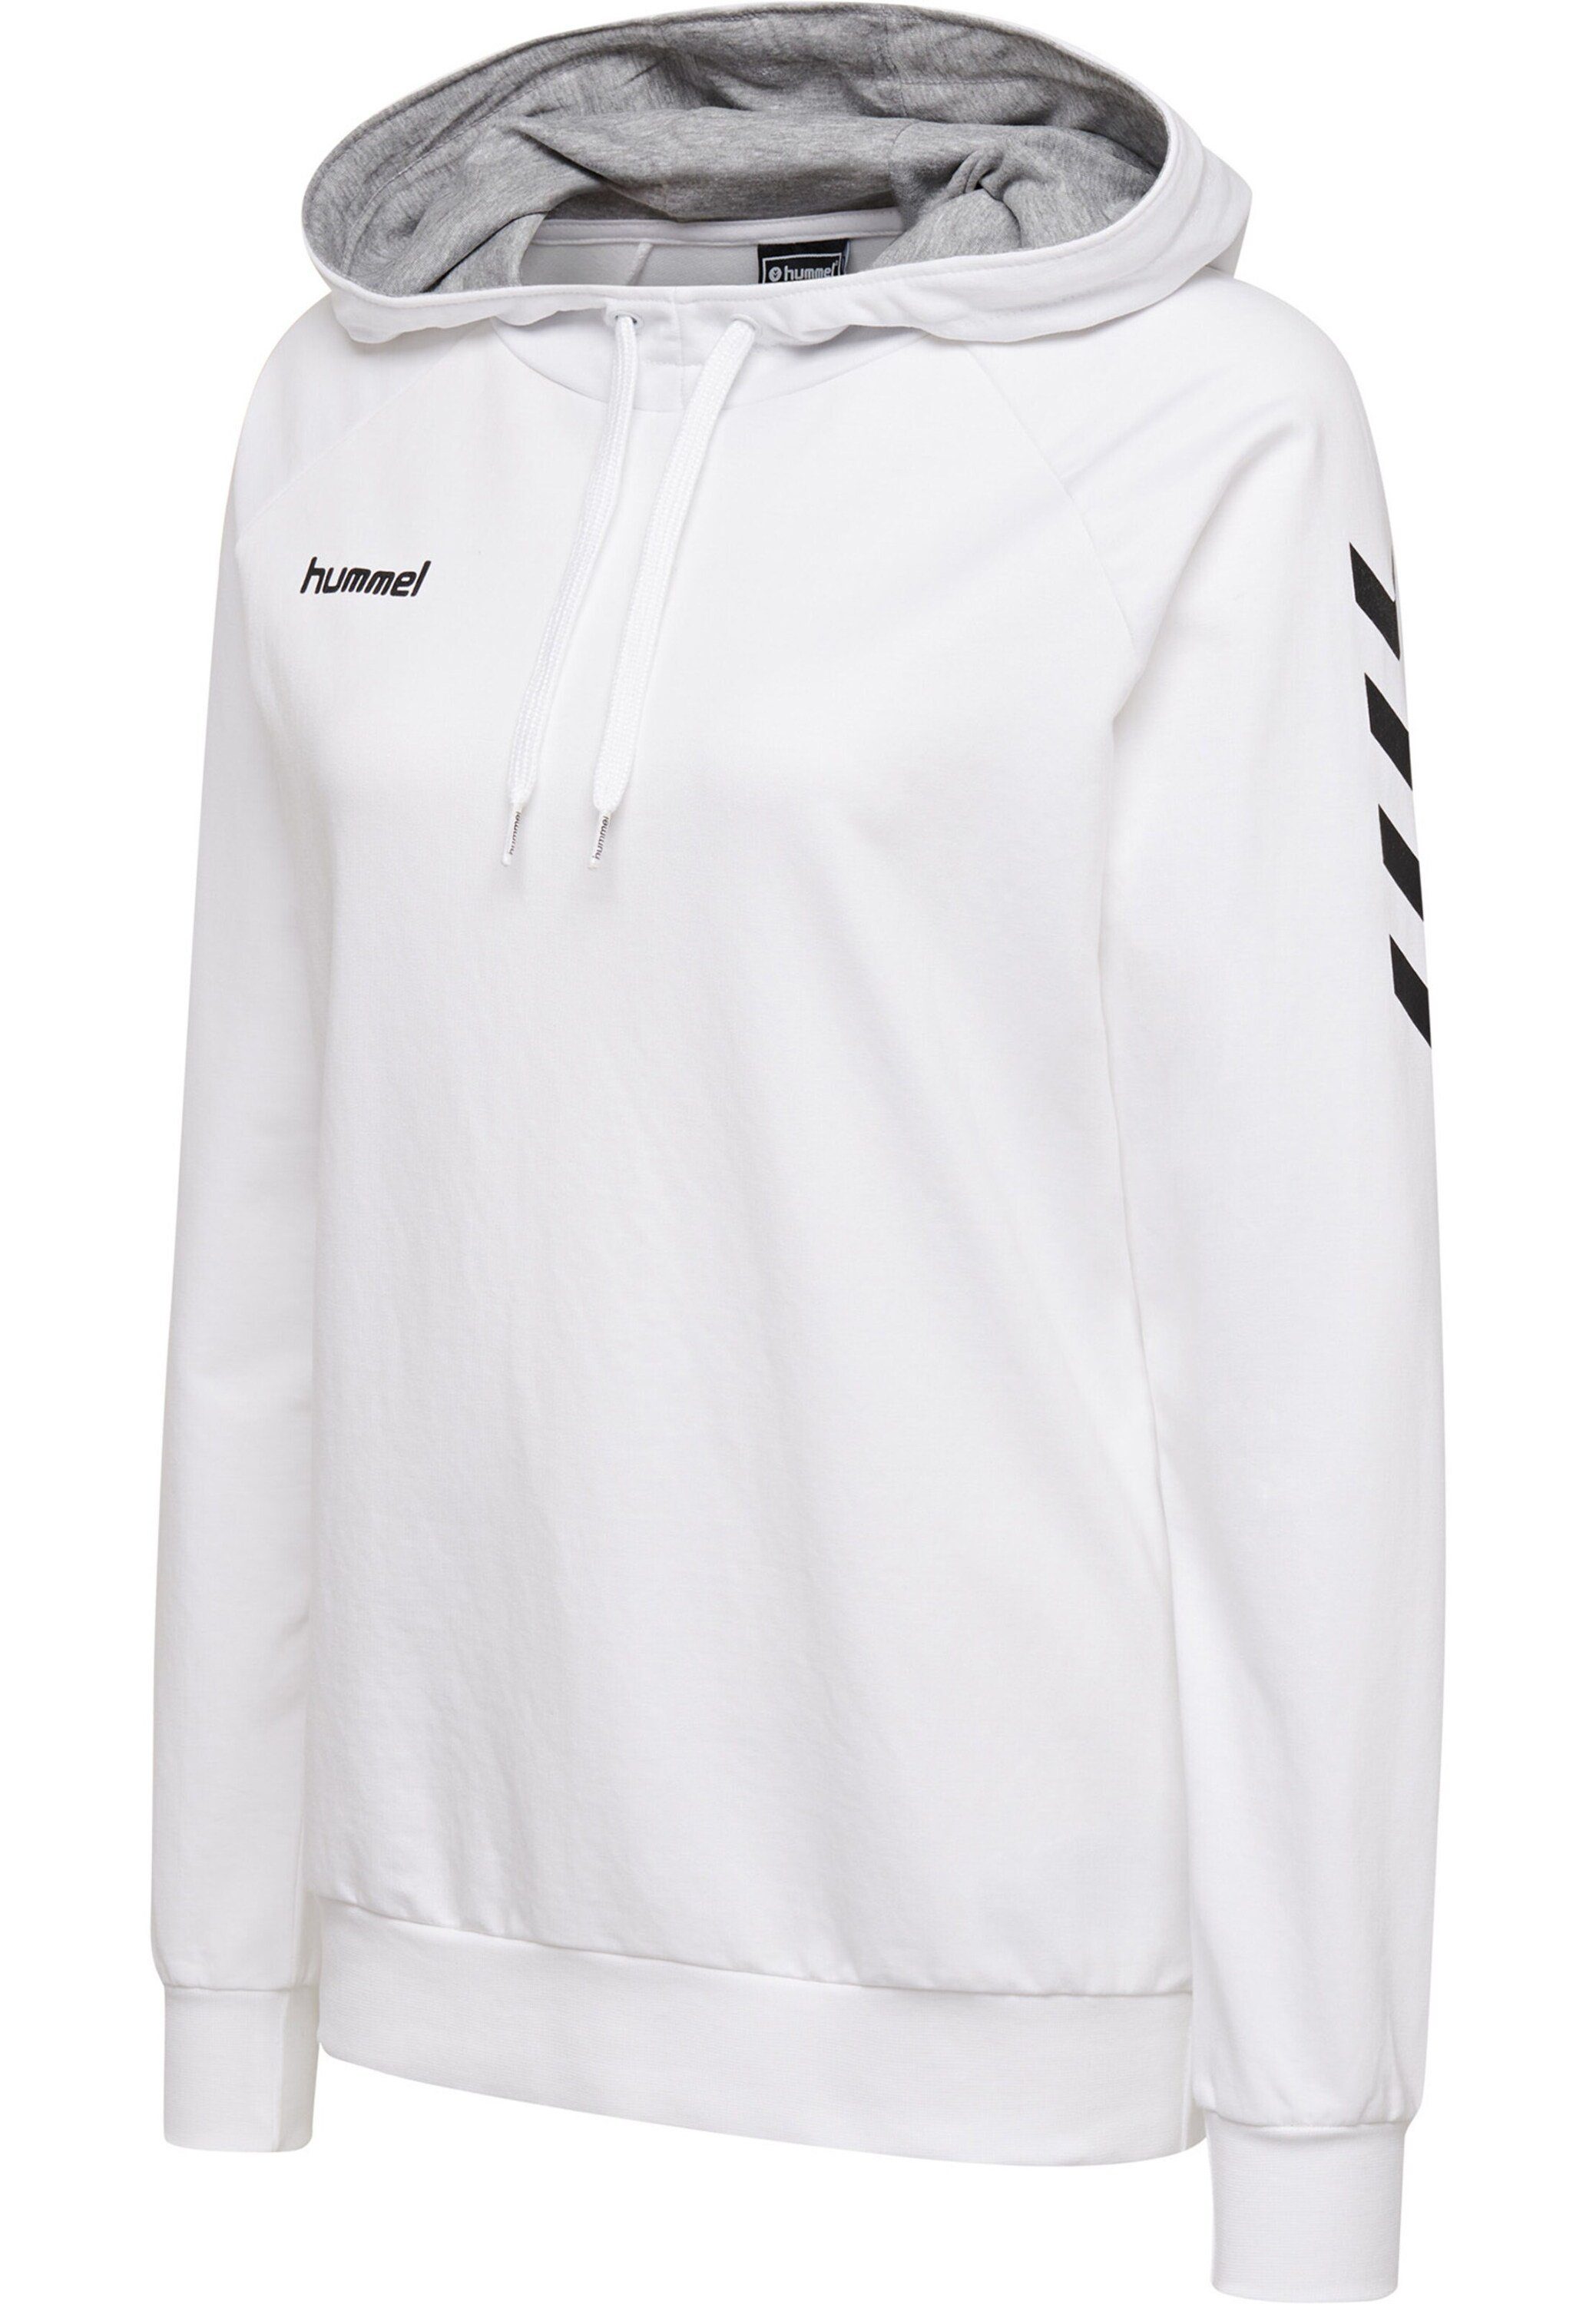 hummel Sweatshirt Plain/ohne Weiß Details (1-tlg)